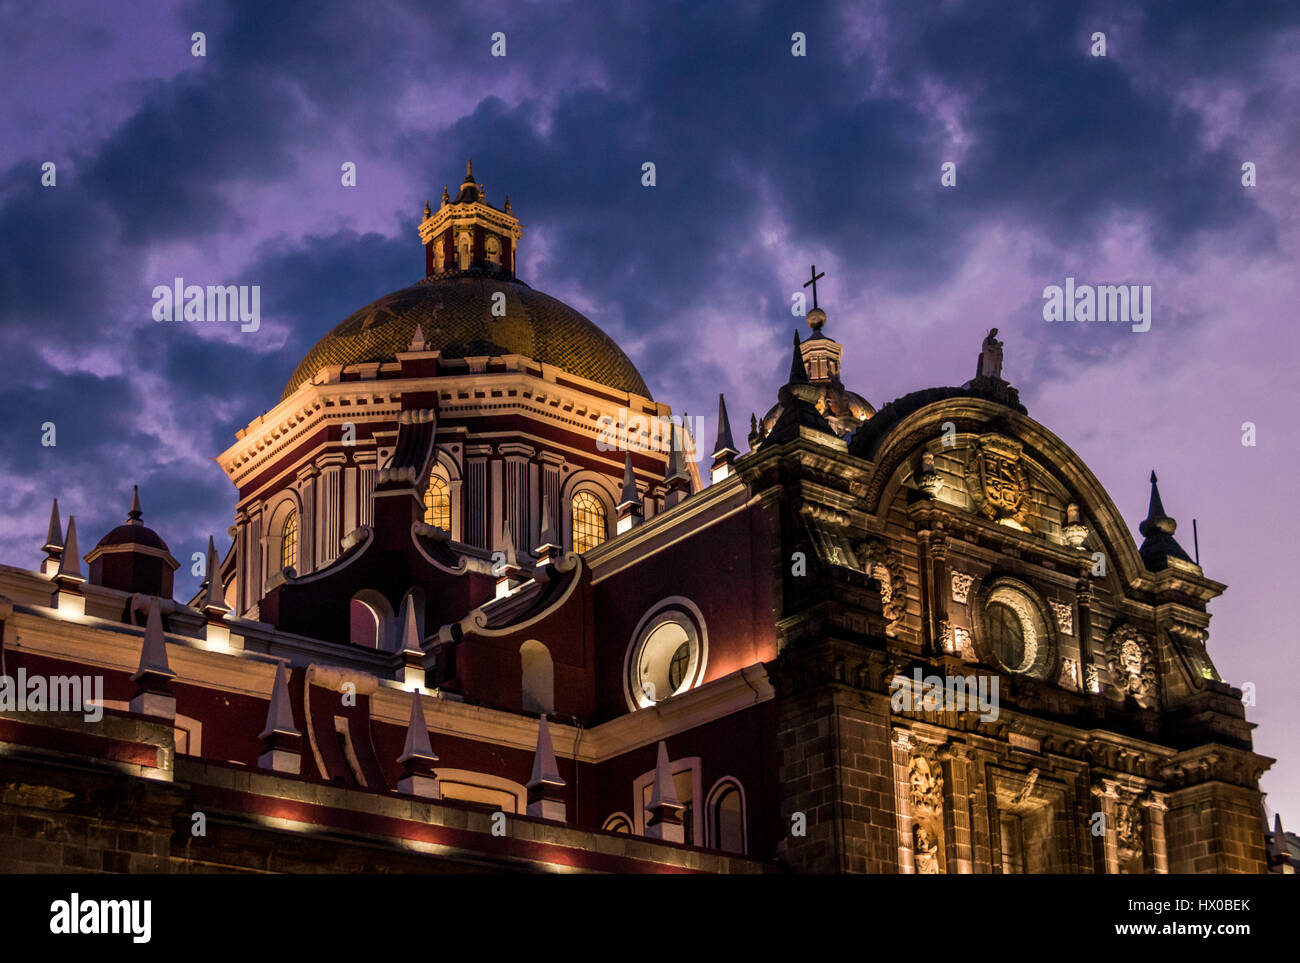 Cathédrale de Puebla la nuit - Puebla, Mexique Banque D'Images